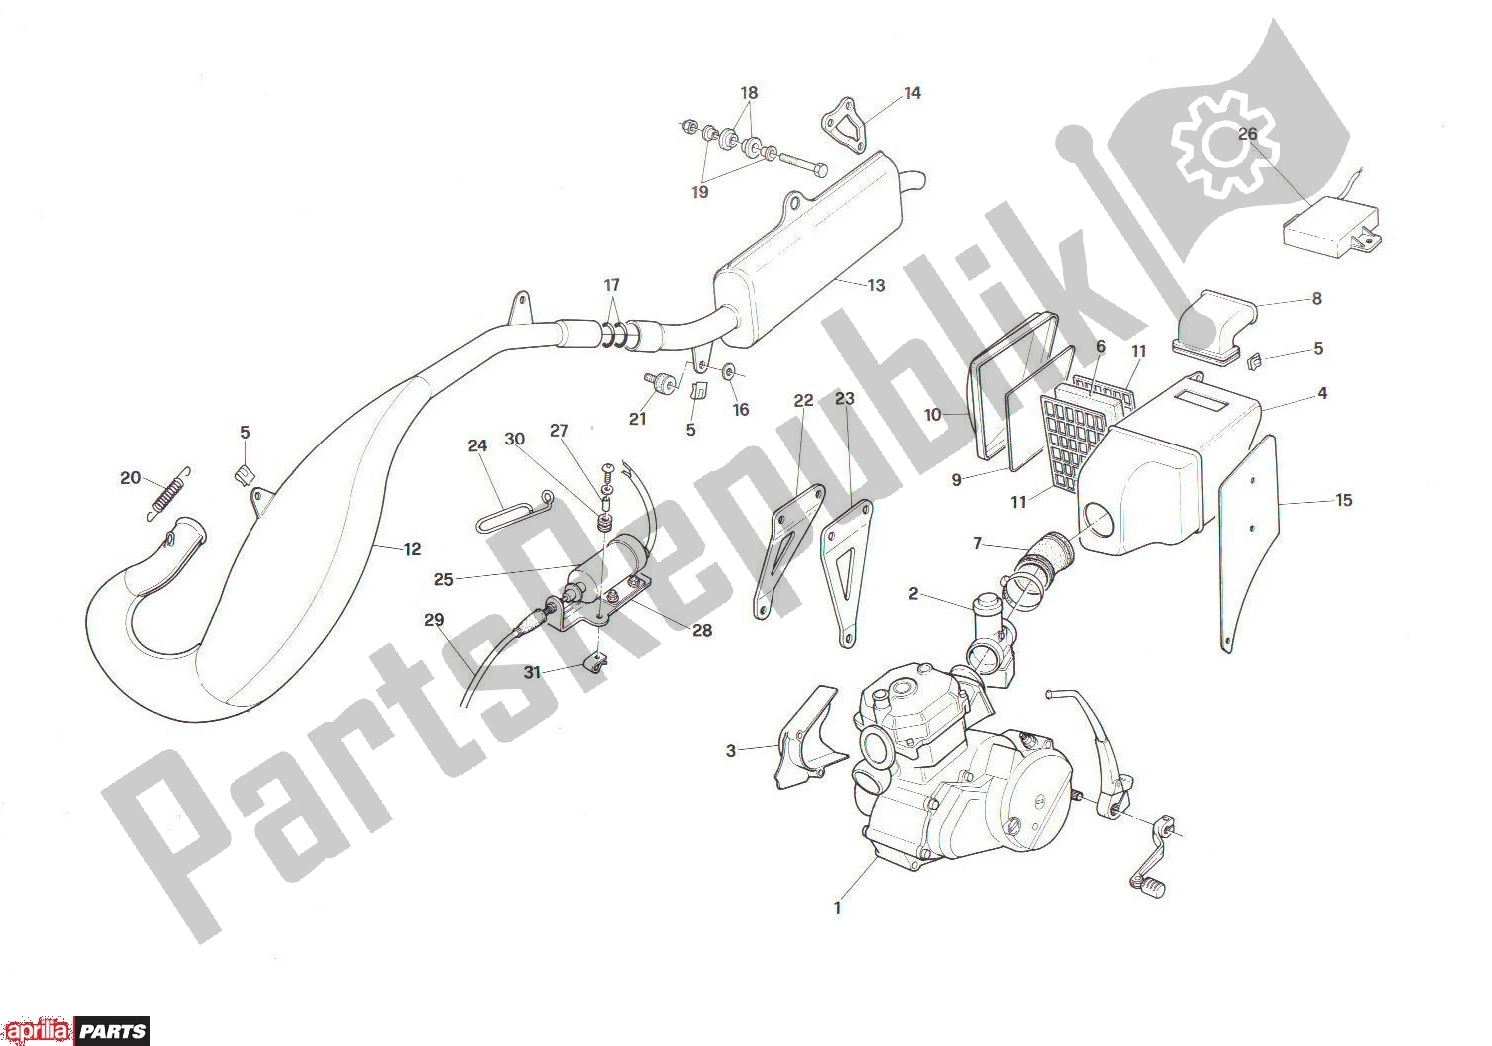 Todas las partes para Exhaust de Aprilia RX 101 125 1989